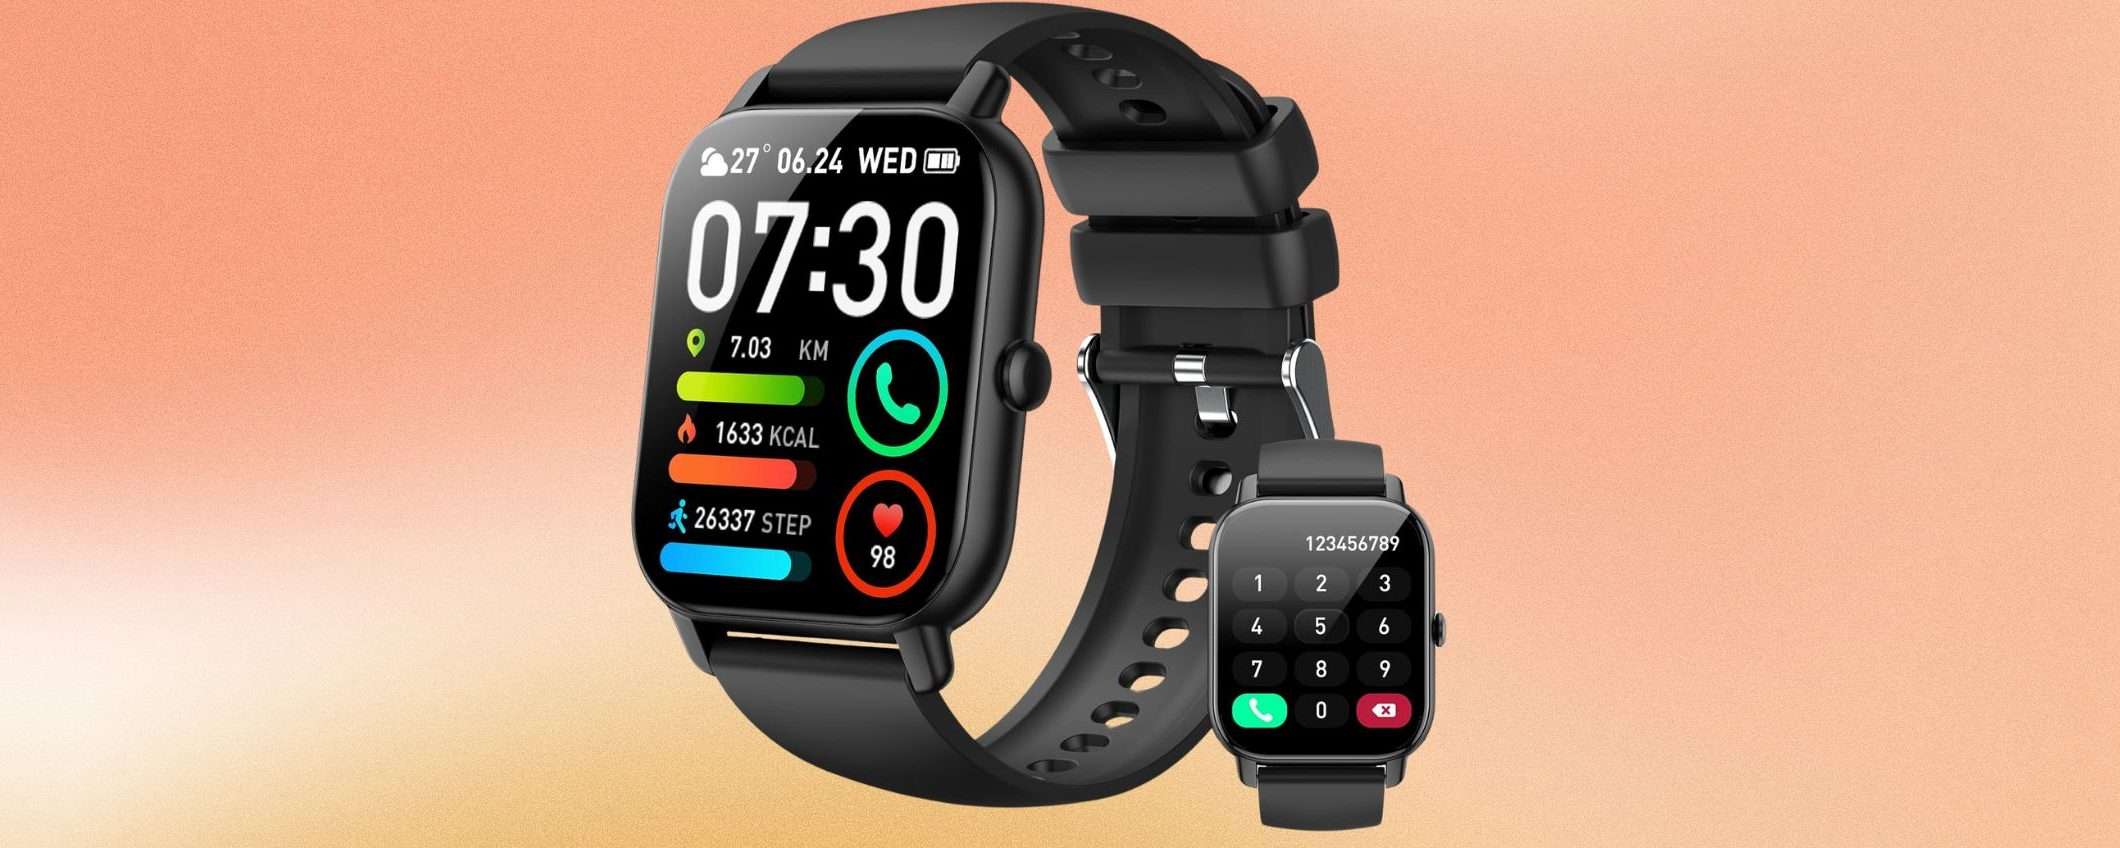 Amazon SVENDE questo smartwatch a soli 28,49€ con un DOPPIO SCONTO